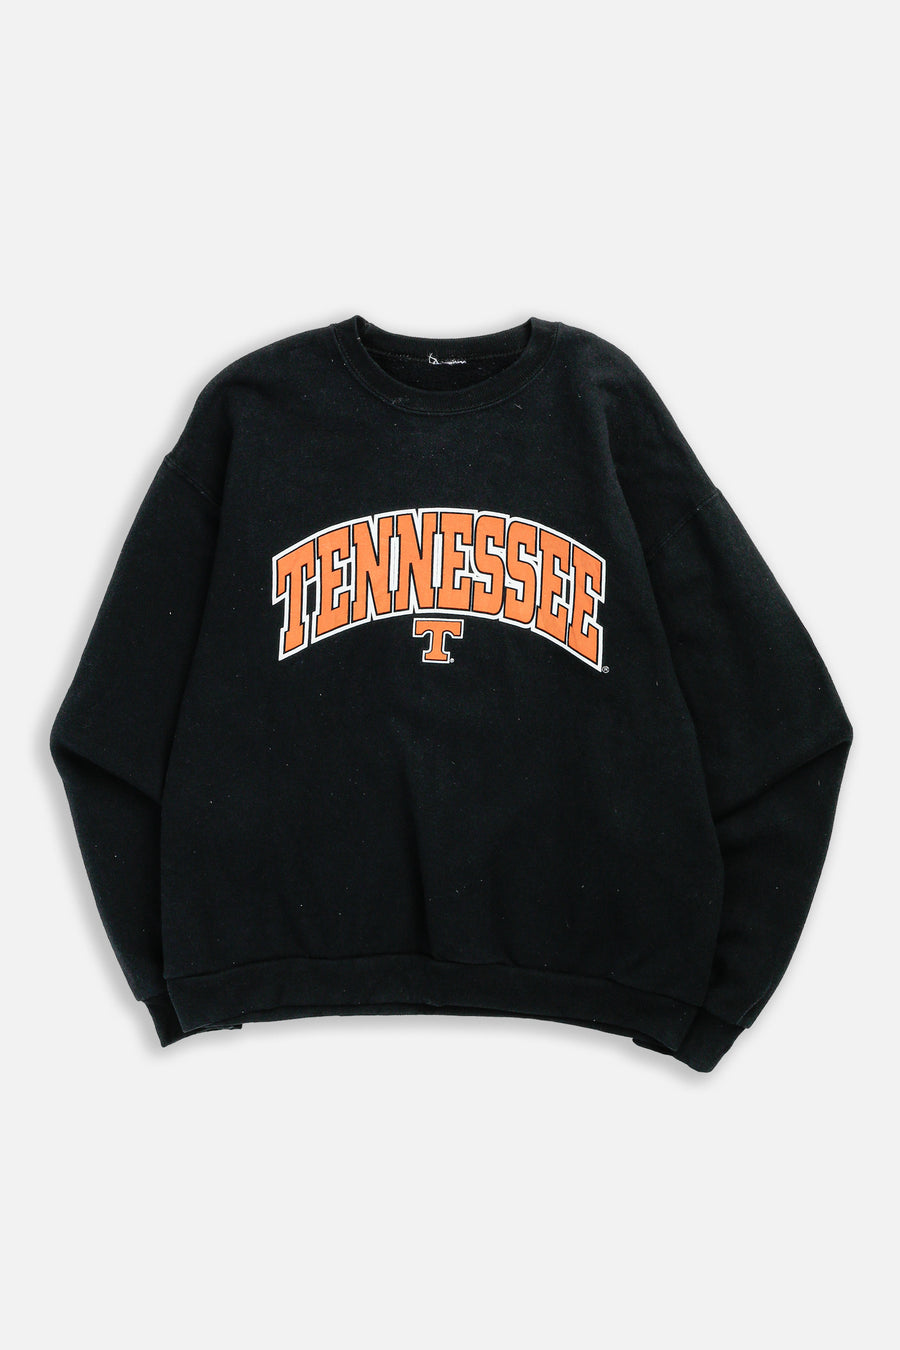 Vintage Tennessee Sweatshirt - S